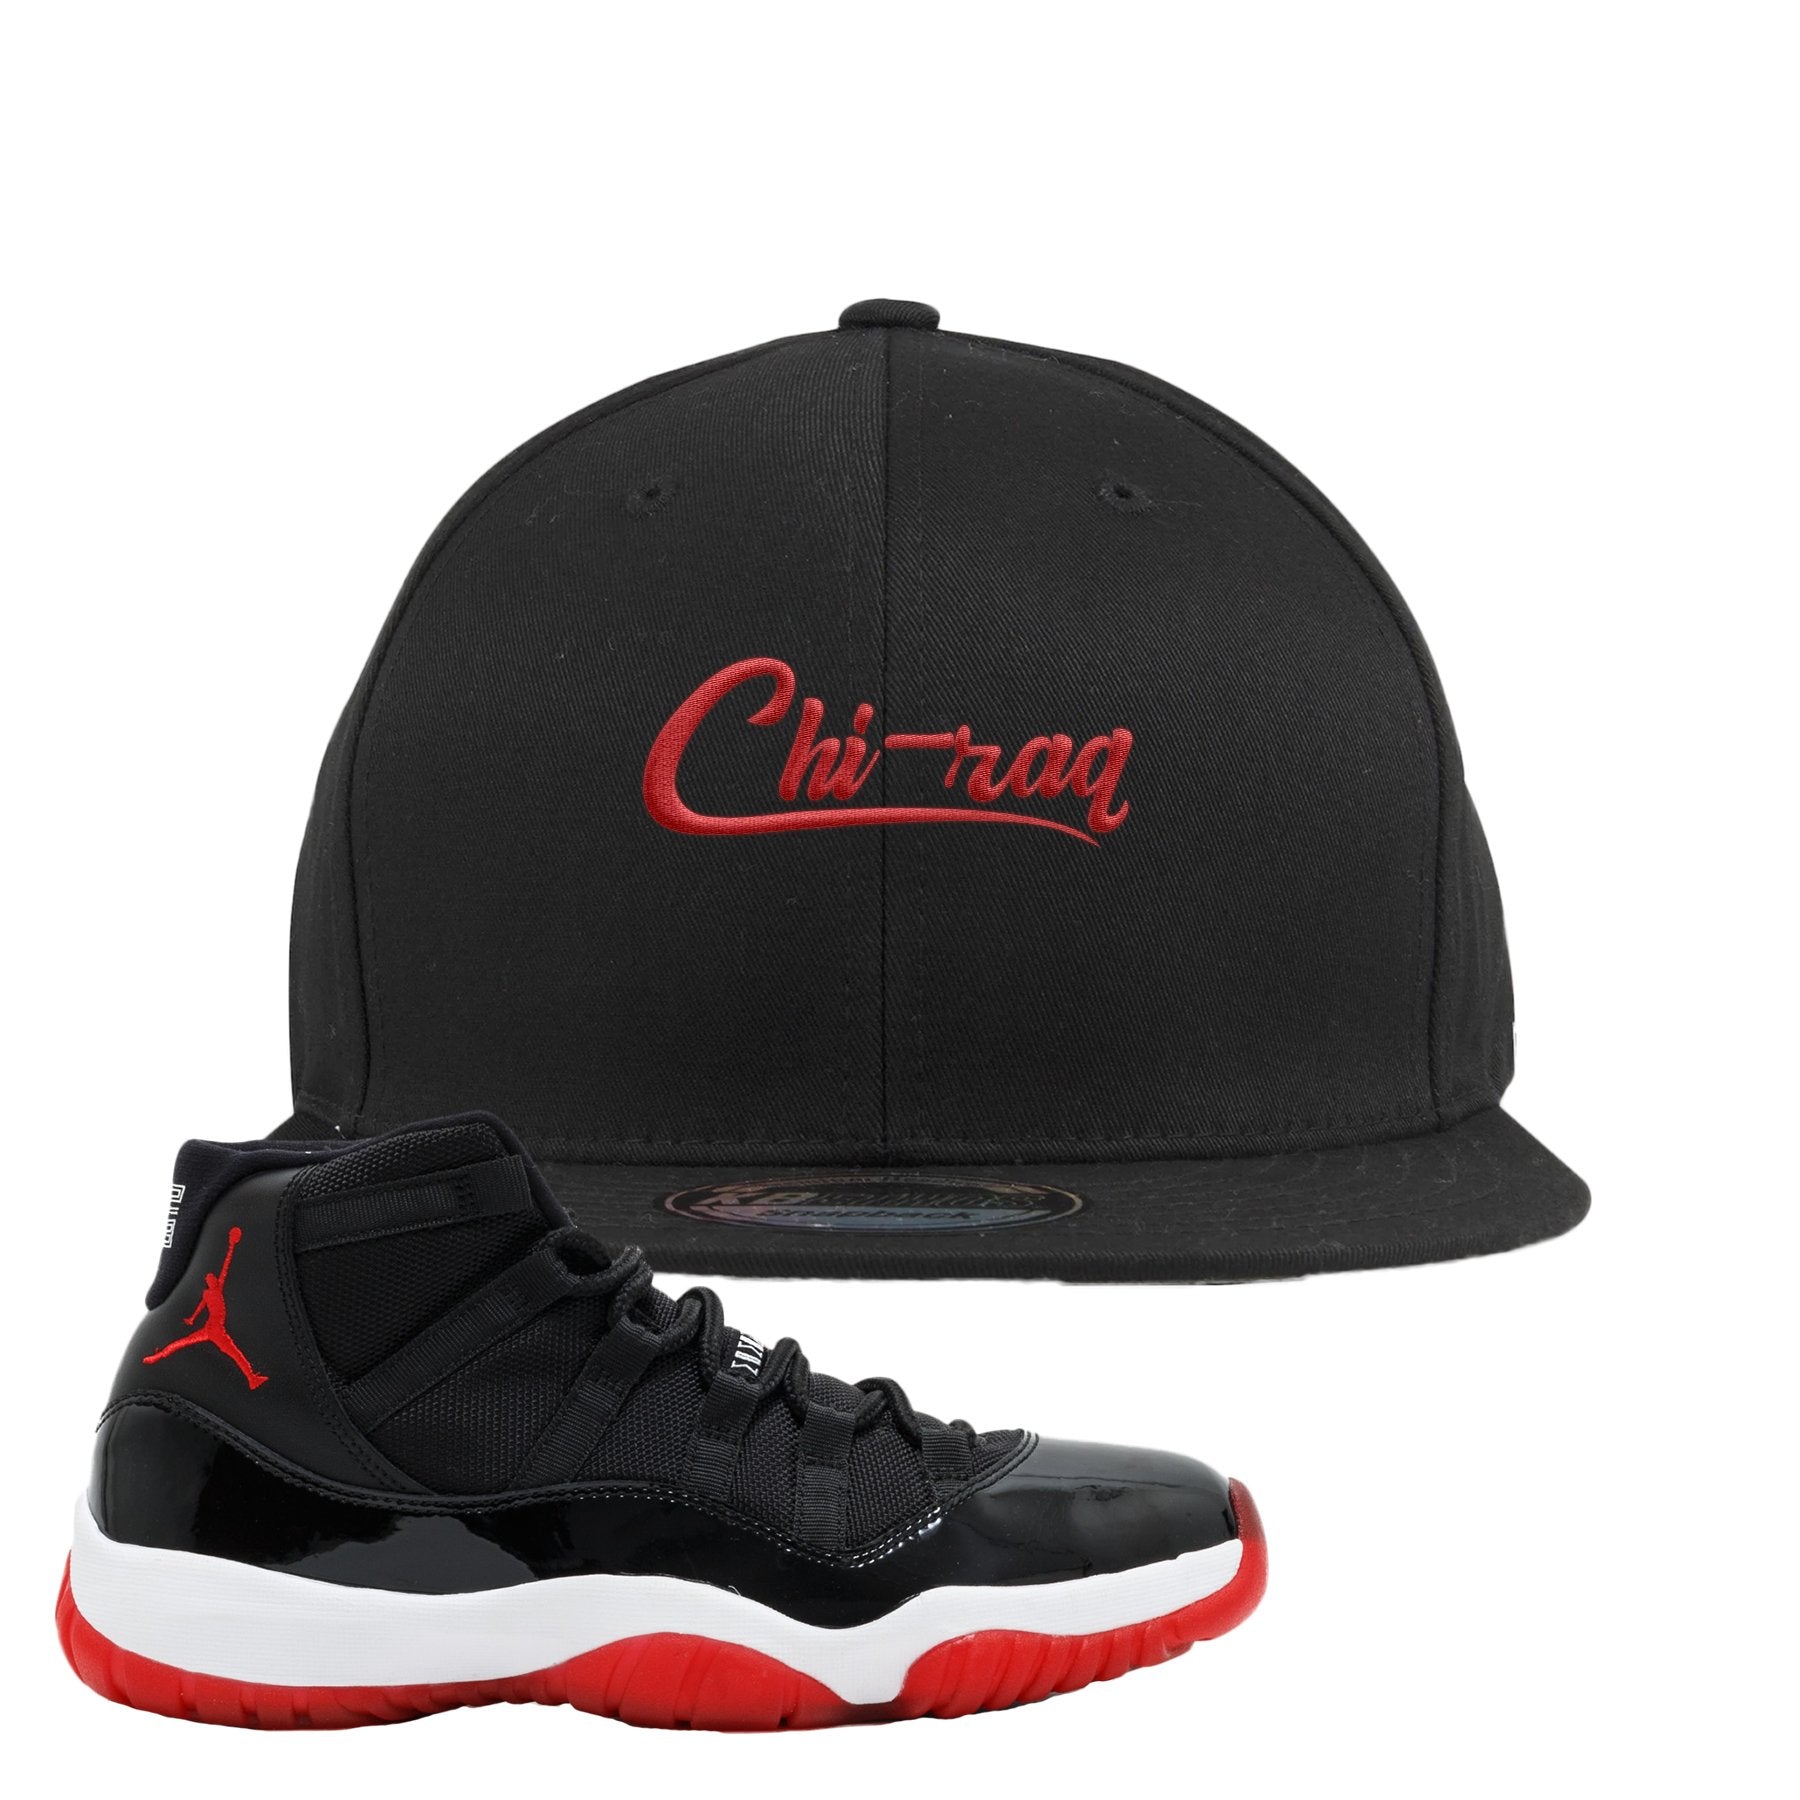 Jordan 11 Bred Chi-raq Black Sneaker Hook Up Snapback Hat